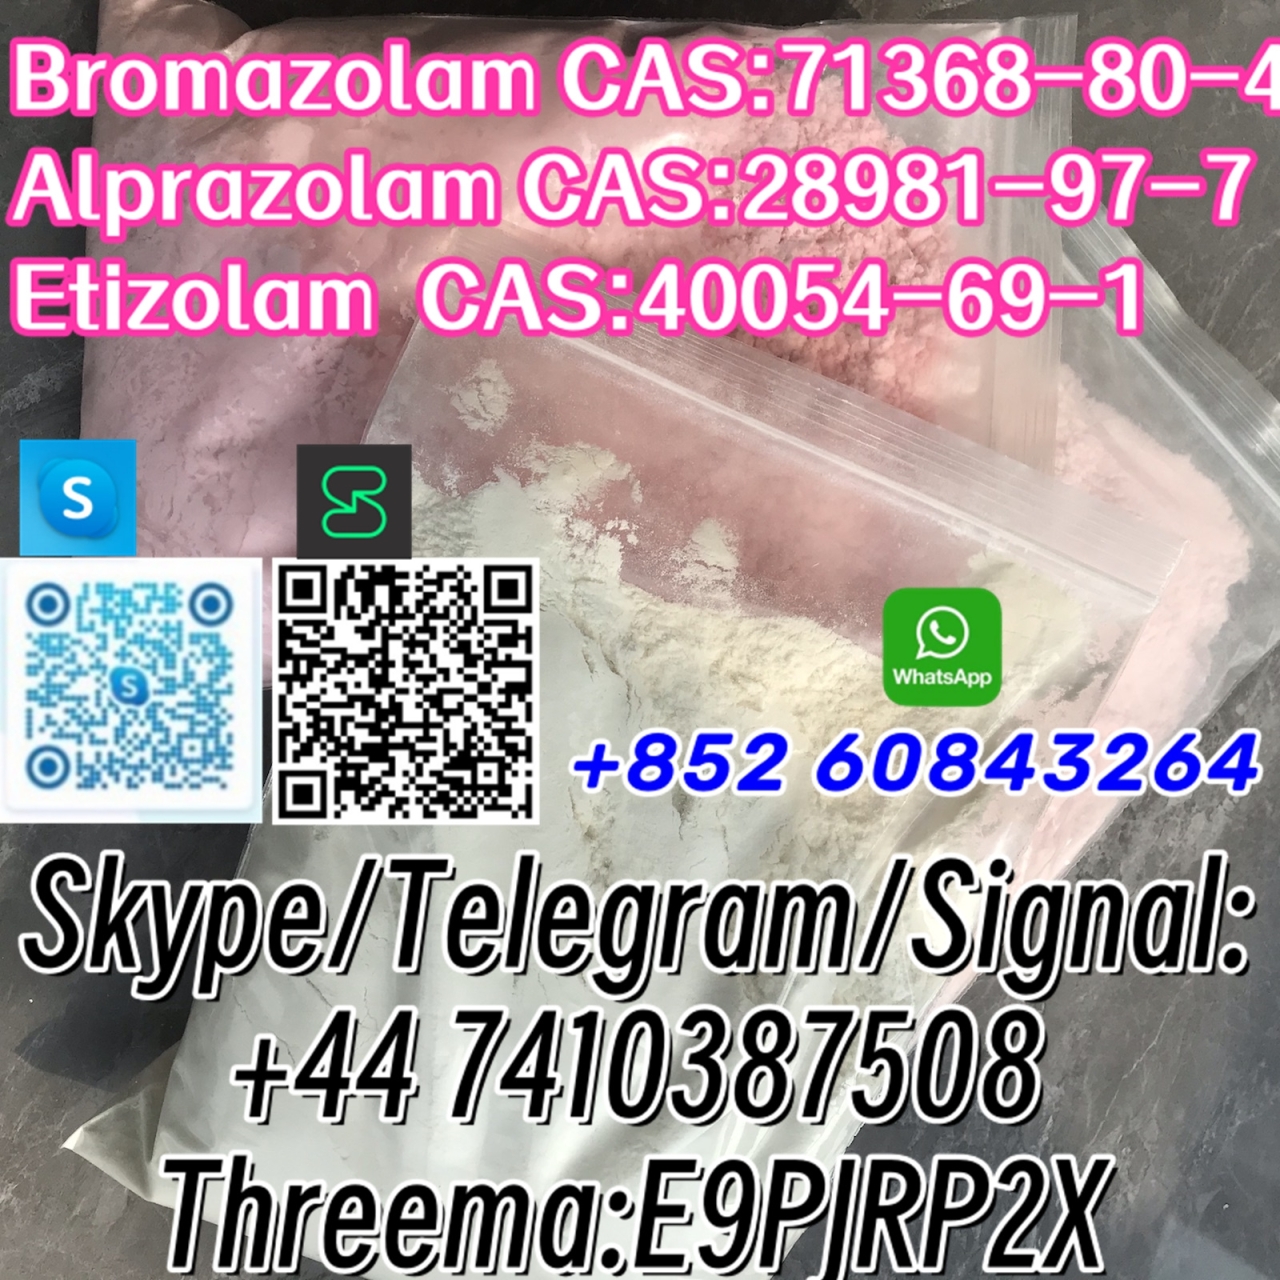 Bromazolam CAS:71368-80-4 Alprazolam CAS:28981-97-7 Etizolam  CAS:40054-69-1 Skype/Telegram/Signal: +44 7410387508 Threema:E9PJRP2X - Bromazolam CAS:71368-80-4
Alprazolam CAS:28981-97-7
Etizolam  CAS:40054-69-1 Skype/Telegram/Signal:
+44 7410387508
Threema:E9PJRP2X